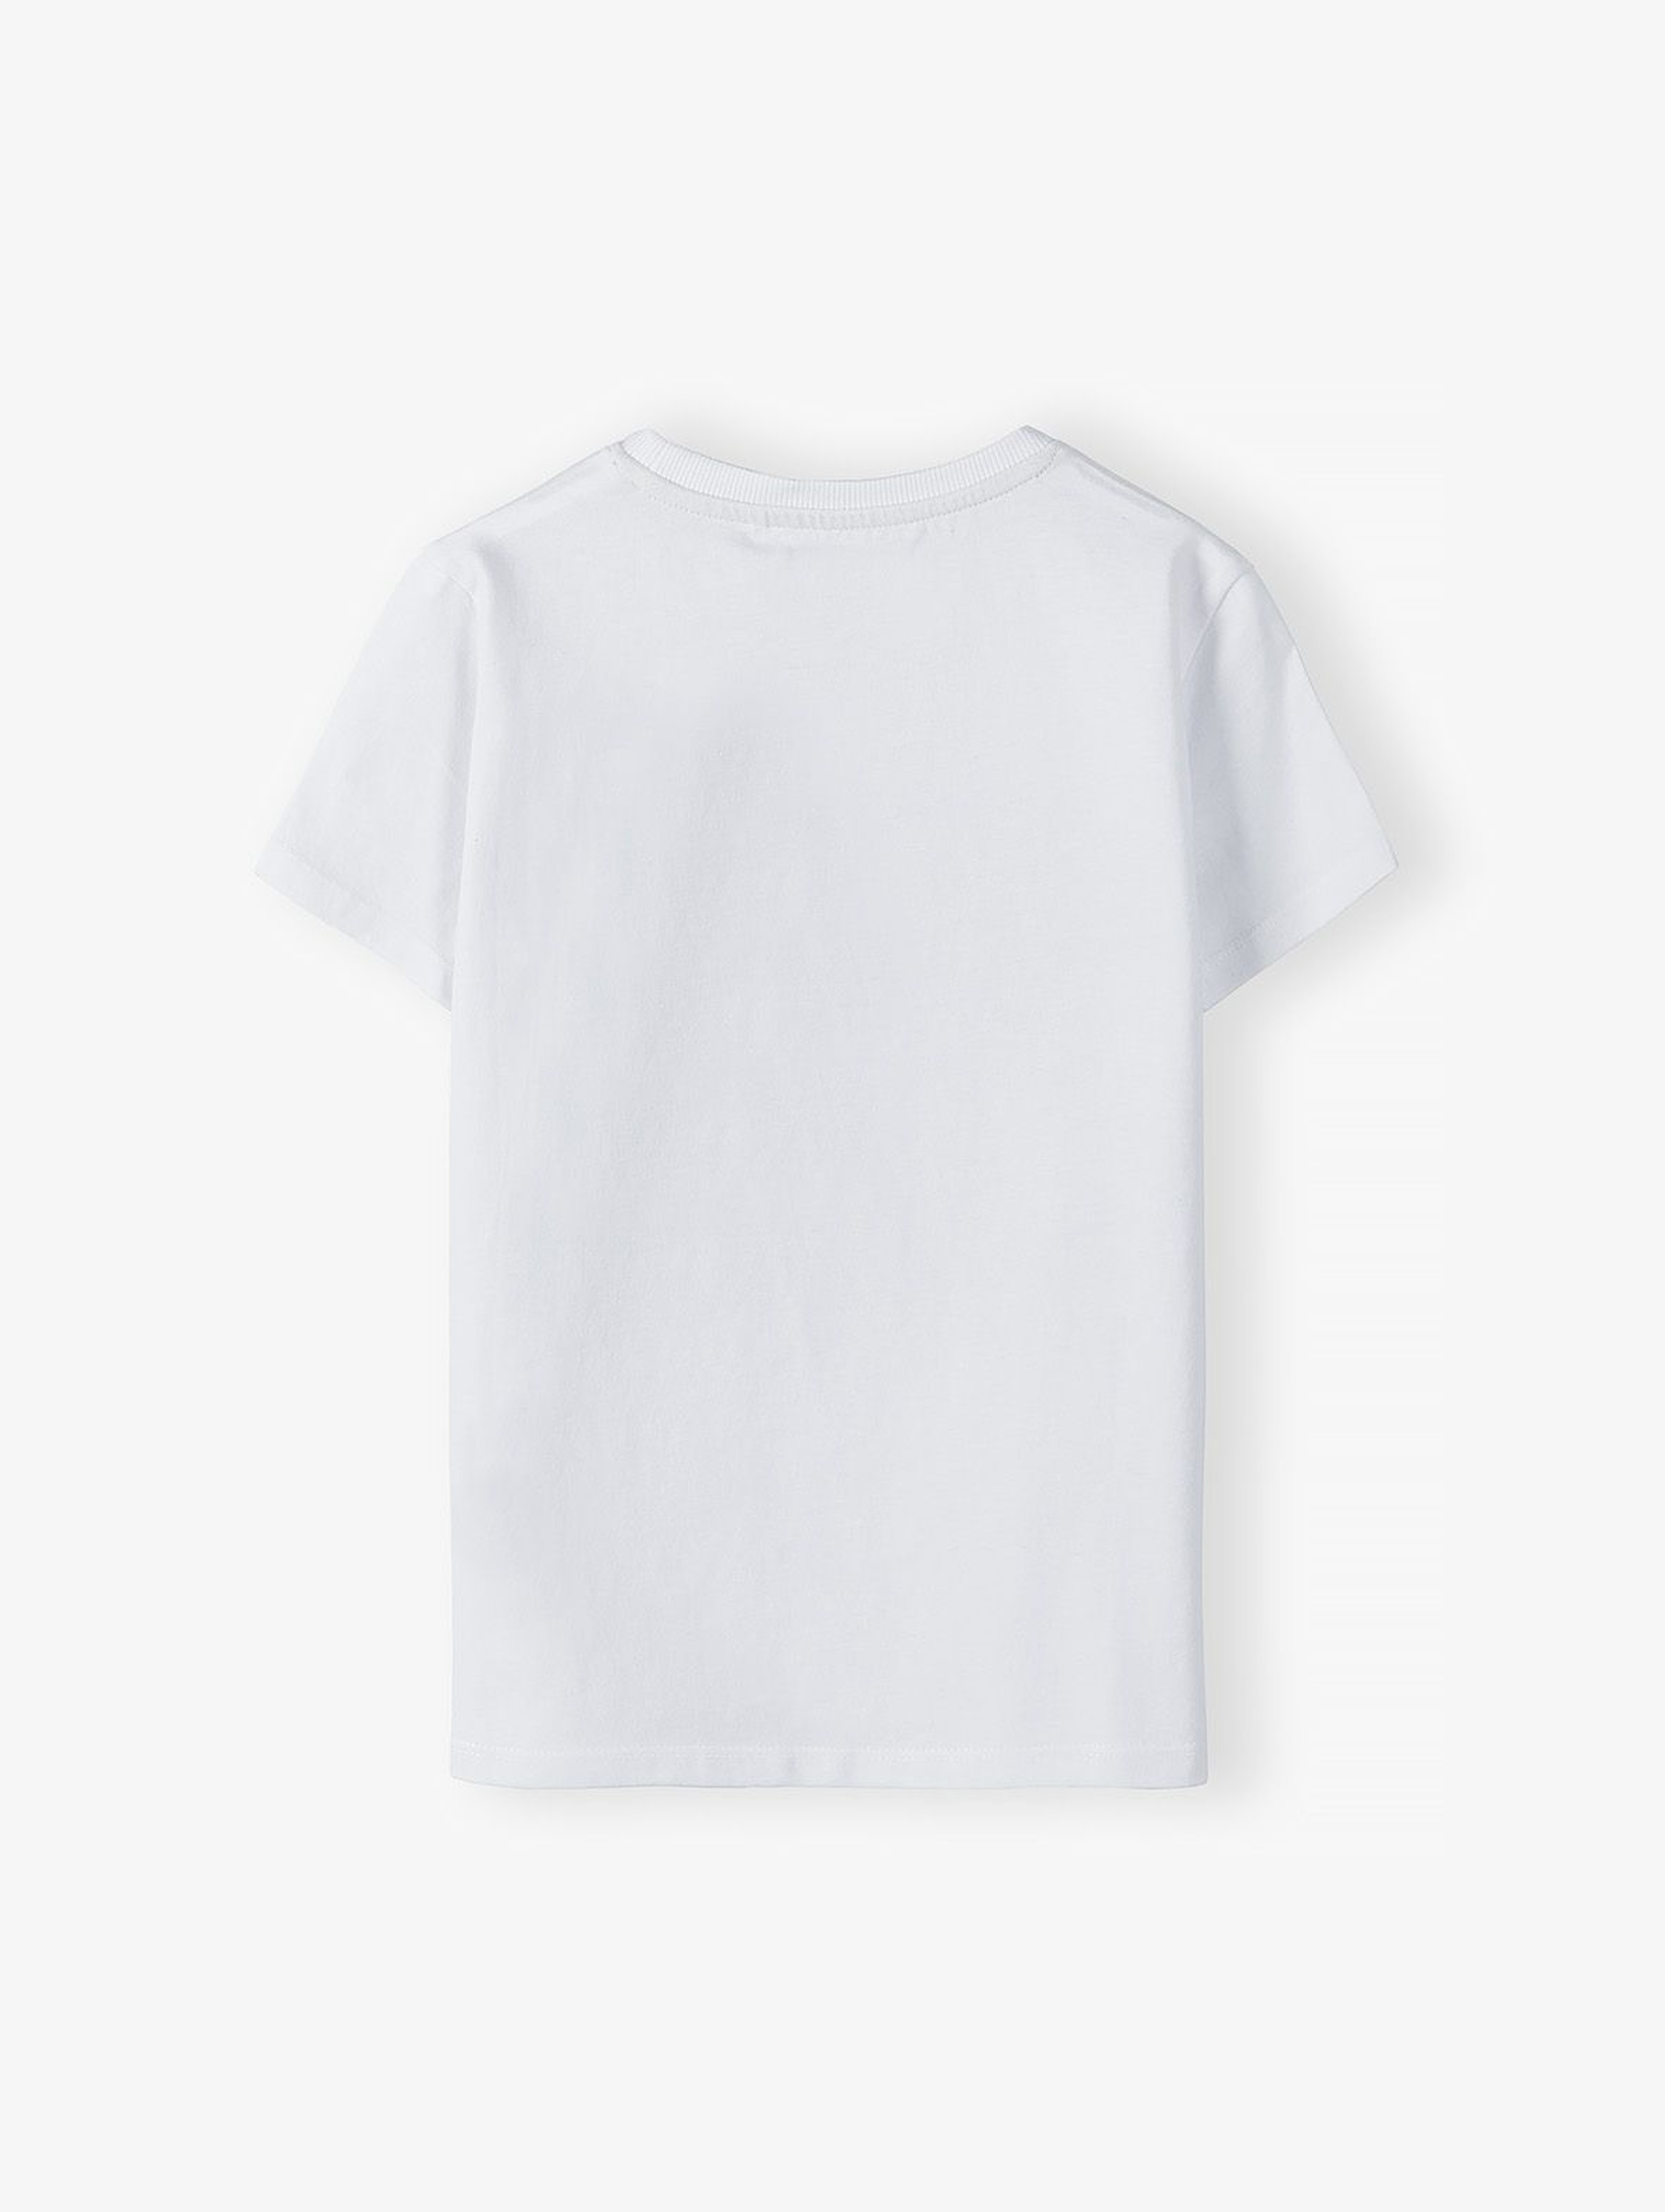 Dzianinowy T-shirt dla chłopca biały z nadrukiem